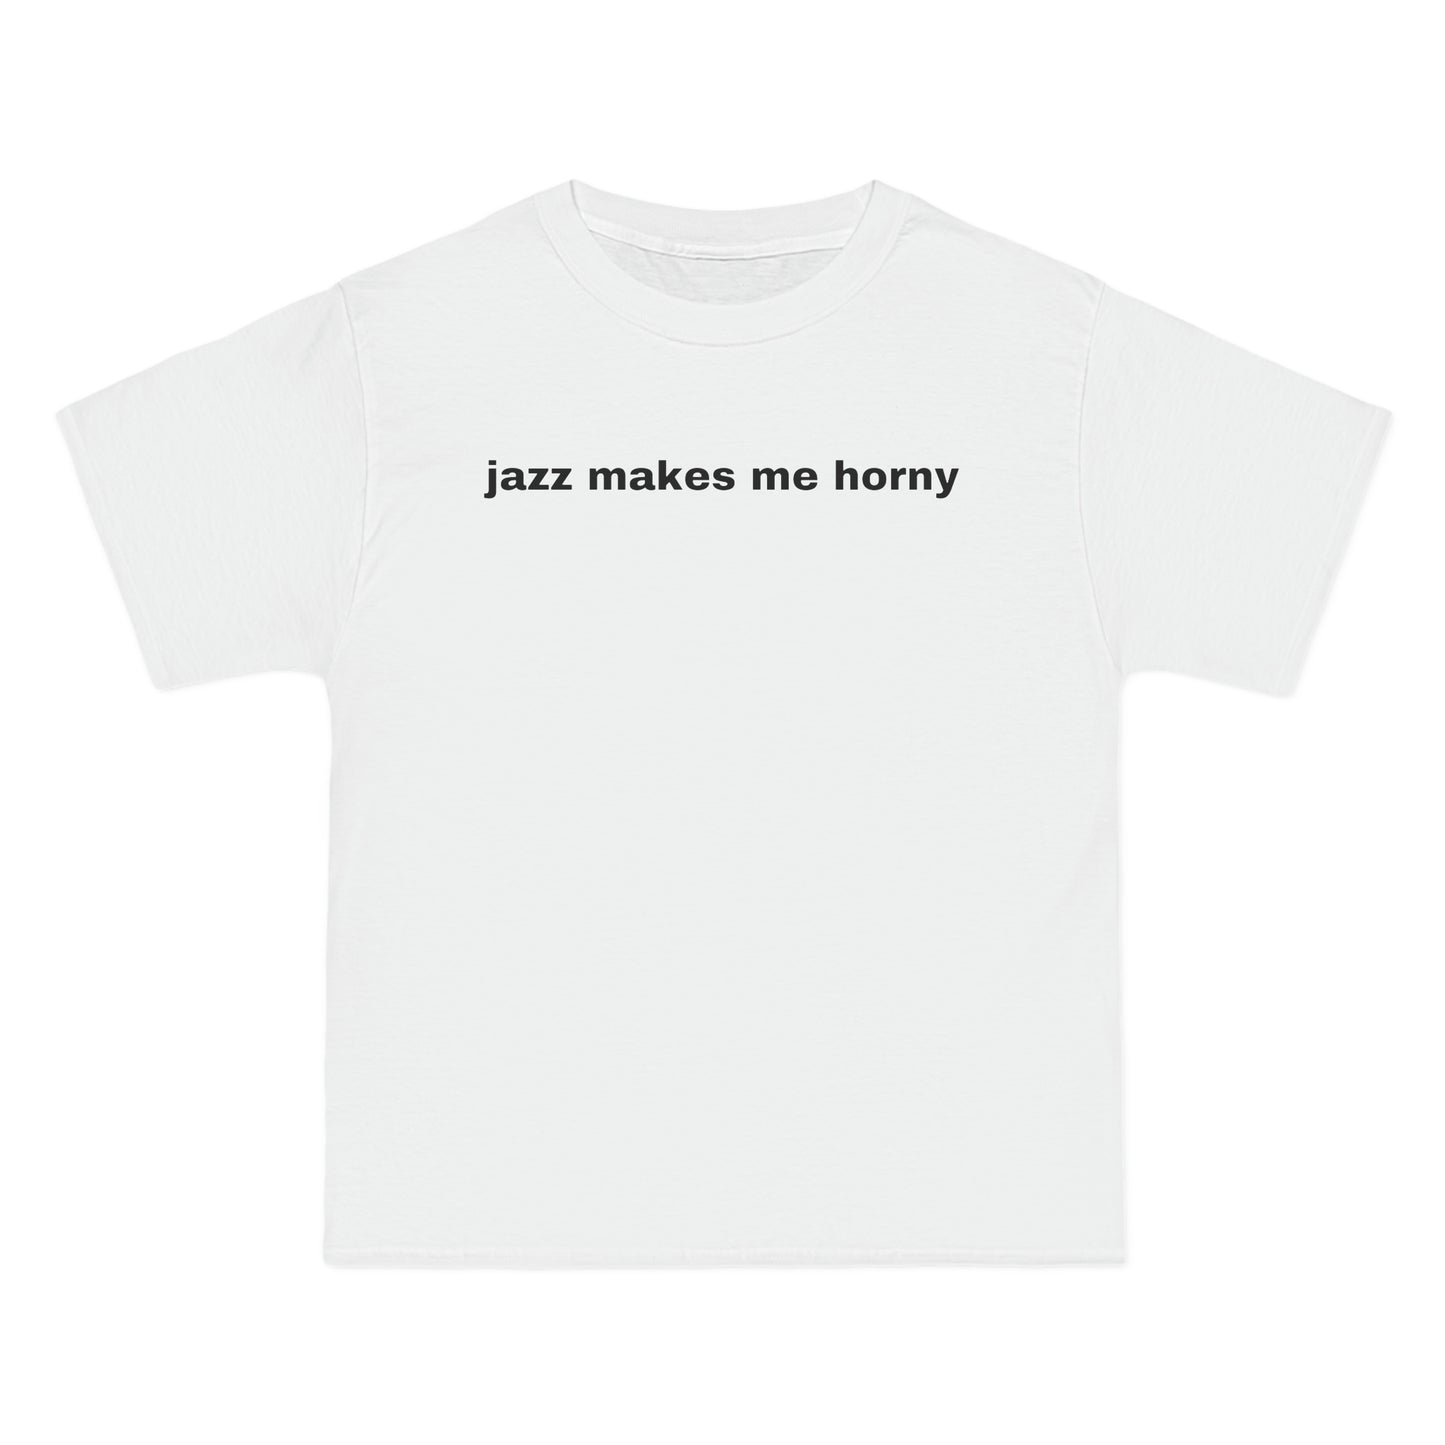 jazz makes me horny Tee